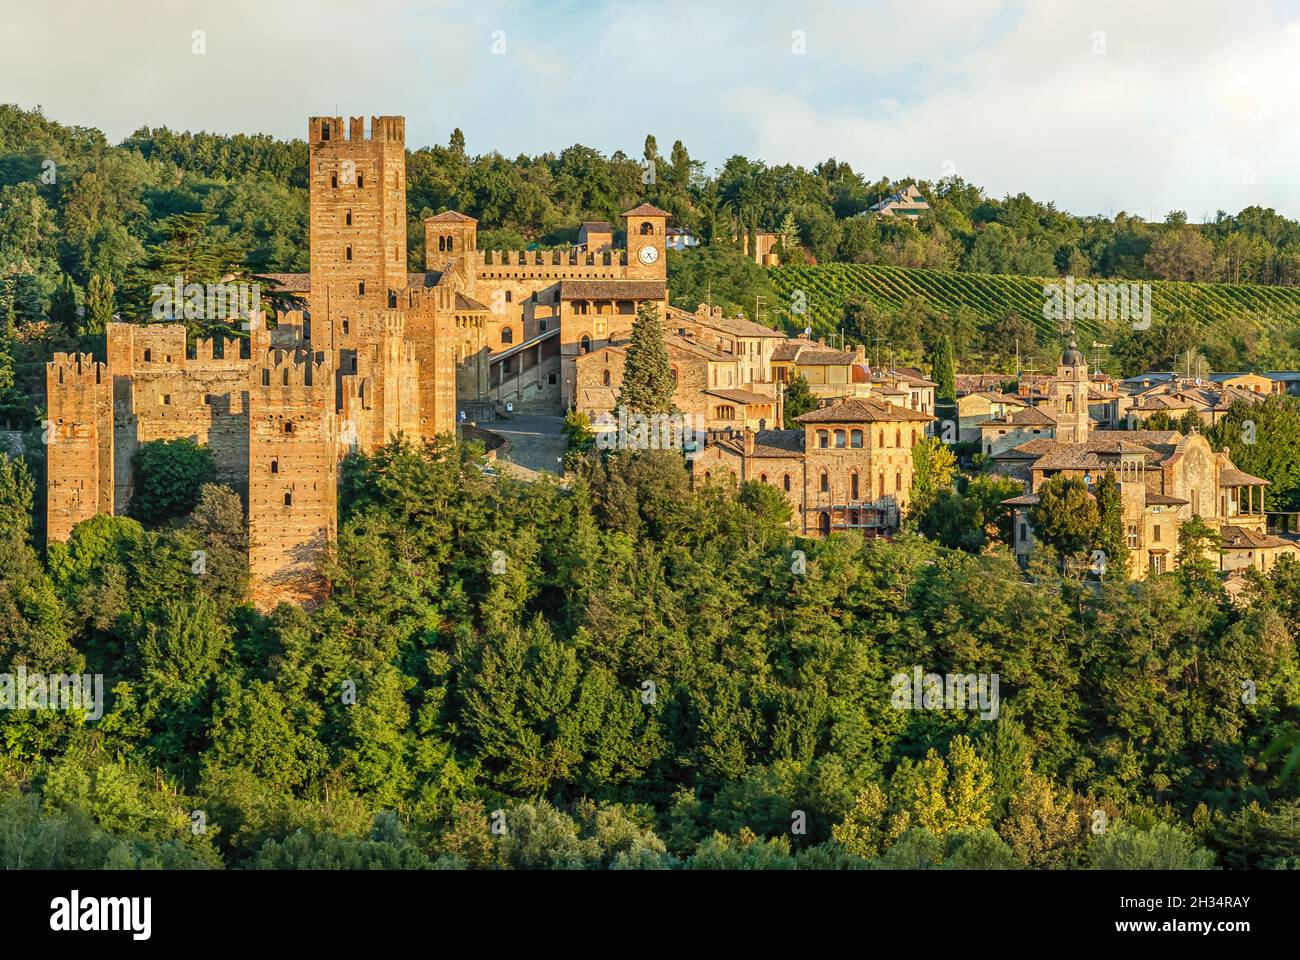 Rocca Viscontea (Visconti castle) of Castell'Arquato in Emilia-Romagna,  Italy Stock Photo - Alamy